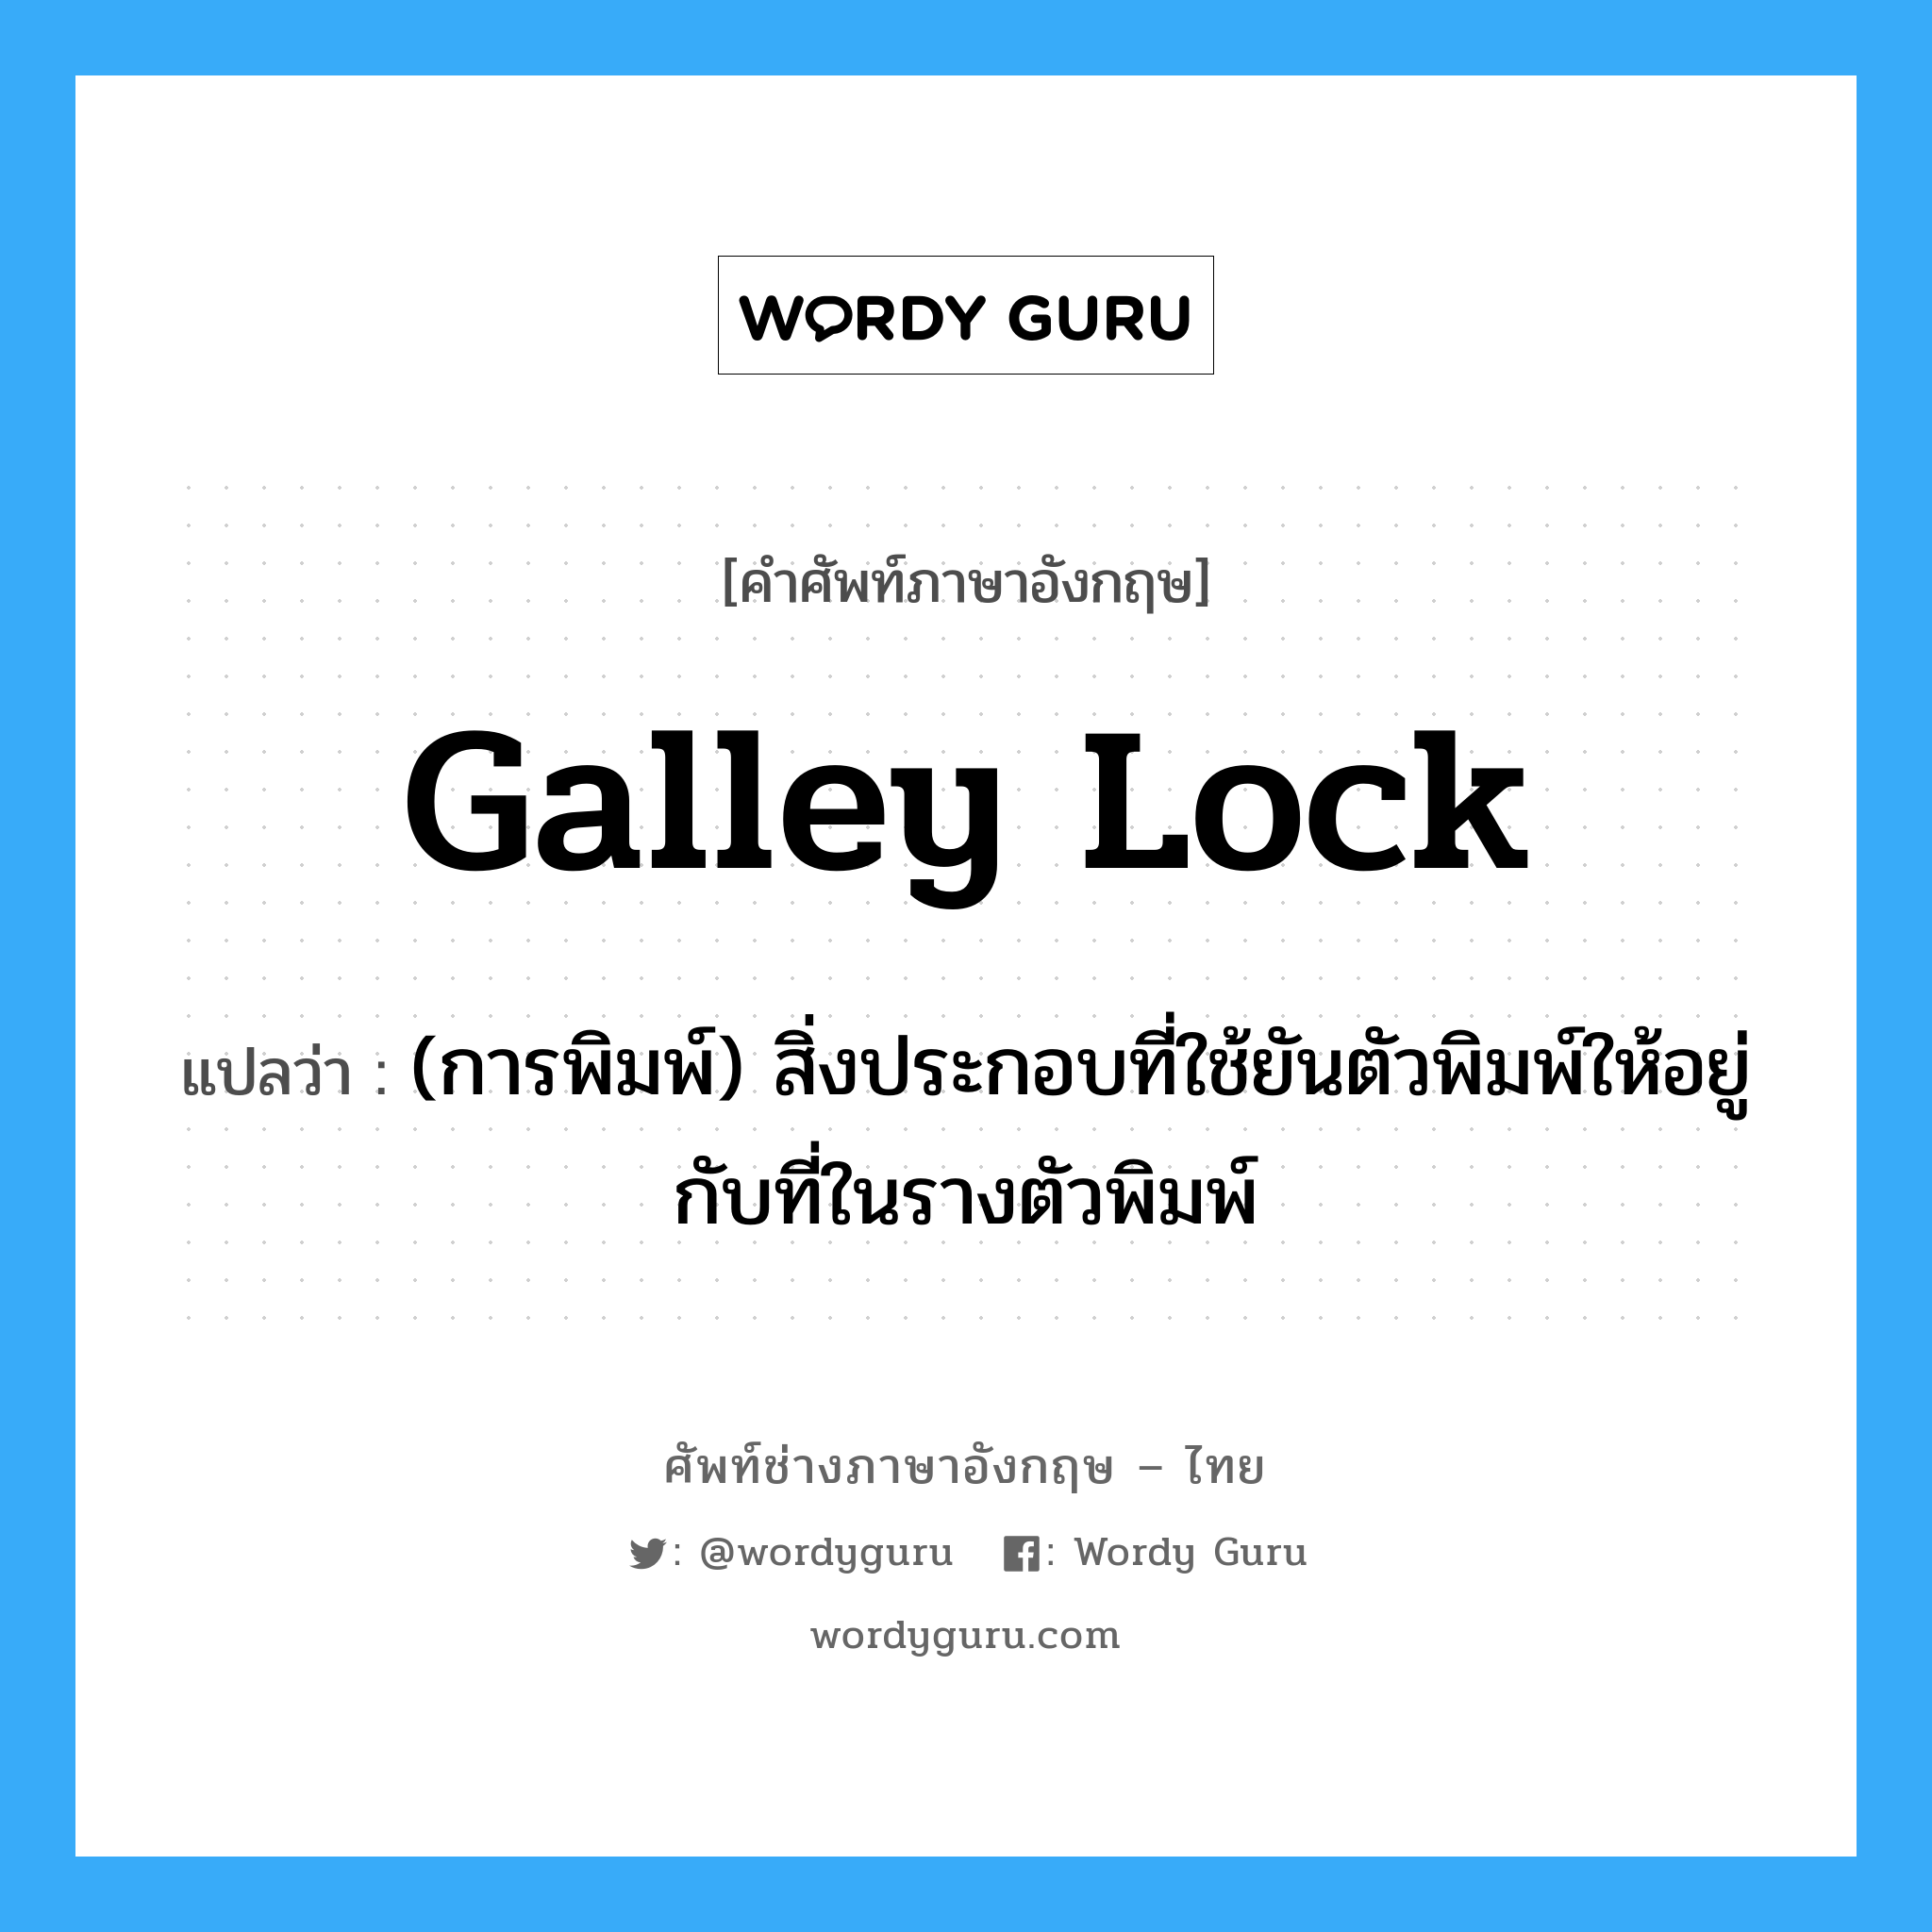 galley lock แปลว่า?, คำศัพท์ช่างภาษาอังกฤษ - ไทย galley lock คำศัพท์ภาษาอังกฤษ galley lock แปลว่า (การพิมพ์) สิ่งประกอบที่ใช้ยันตัวพิมพ์ให้อยู่กับที่ในรางตัวพิมพ์